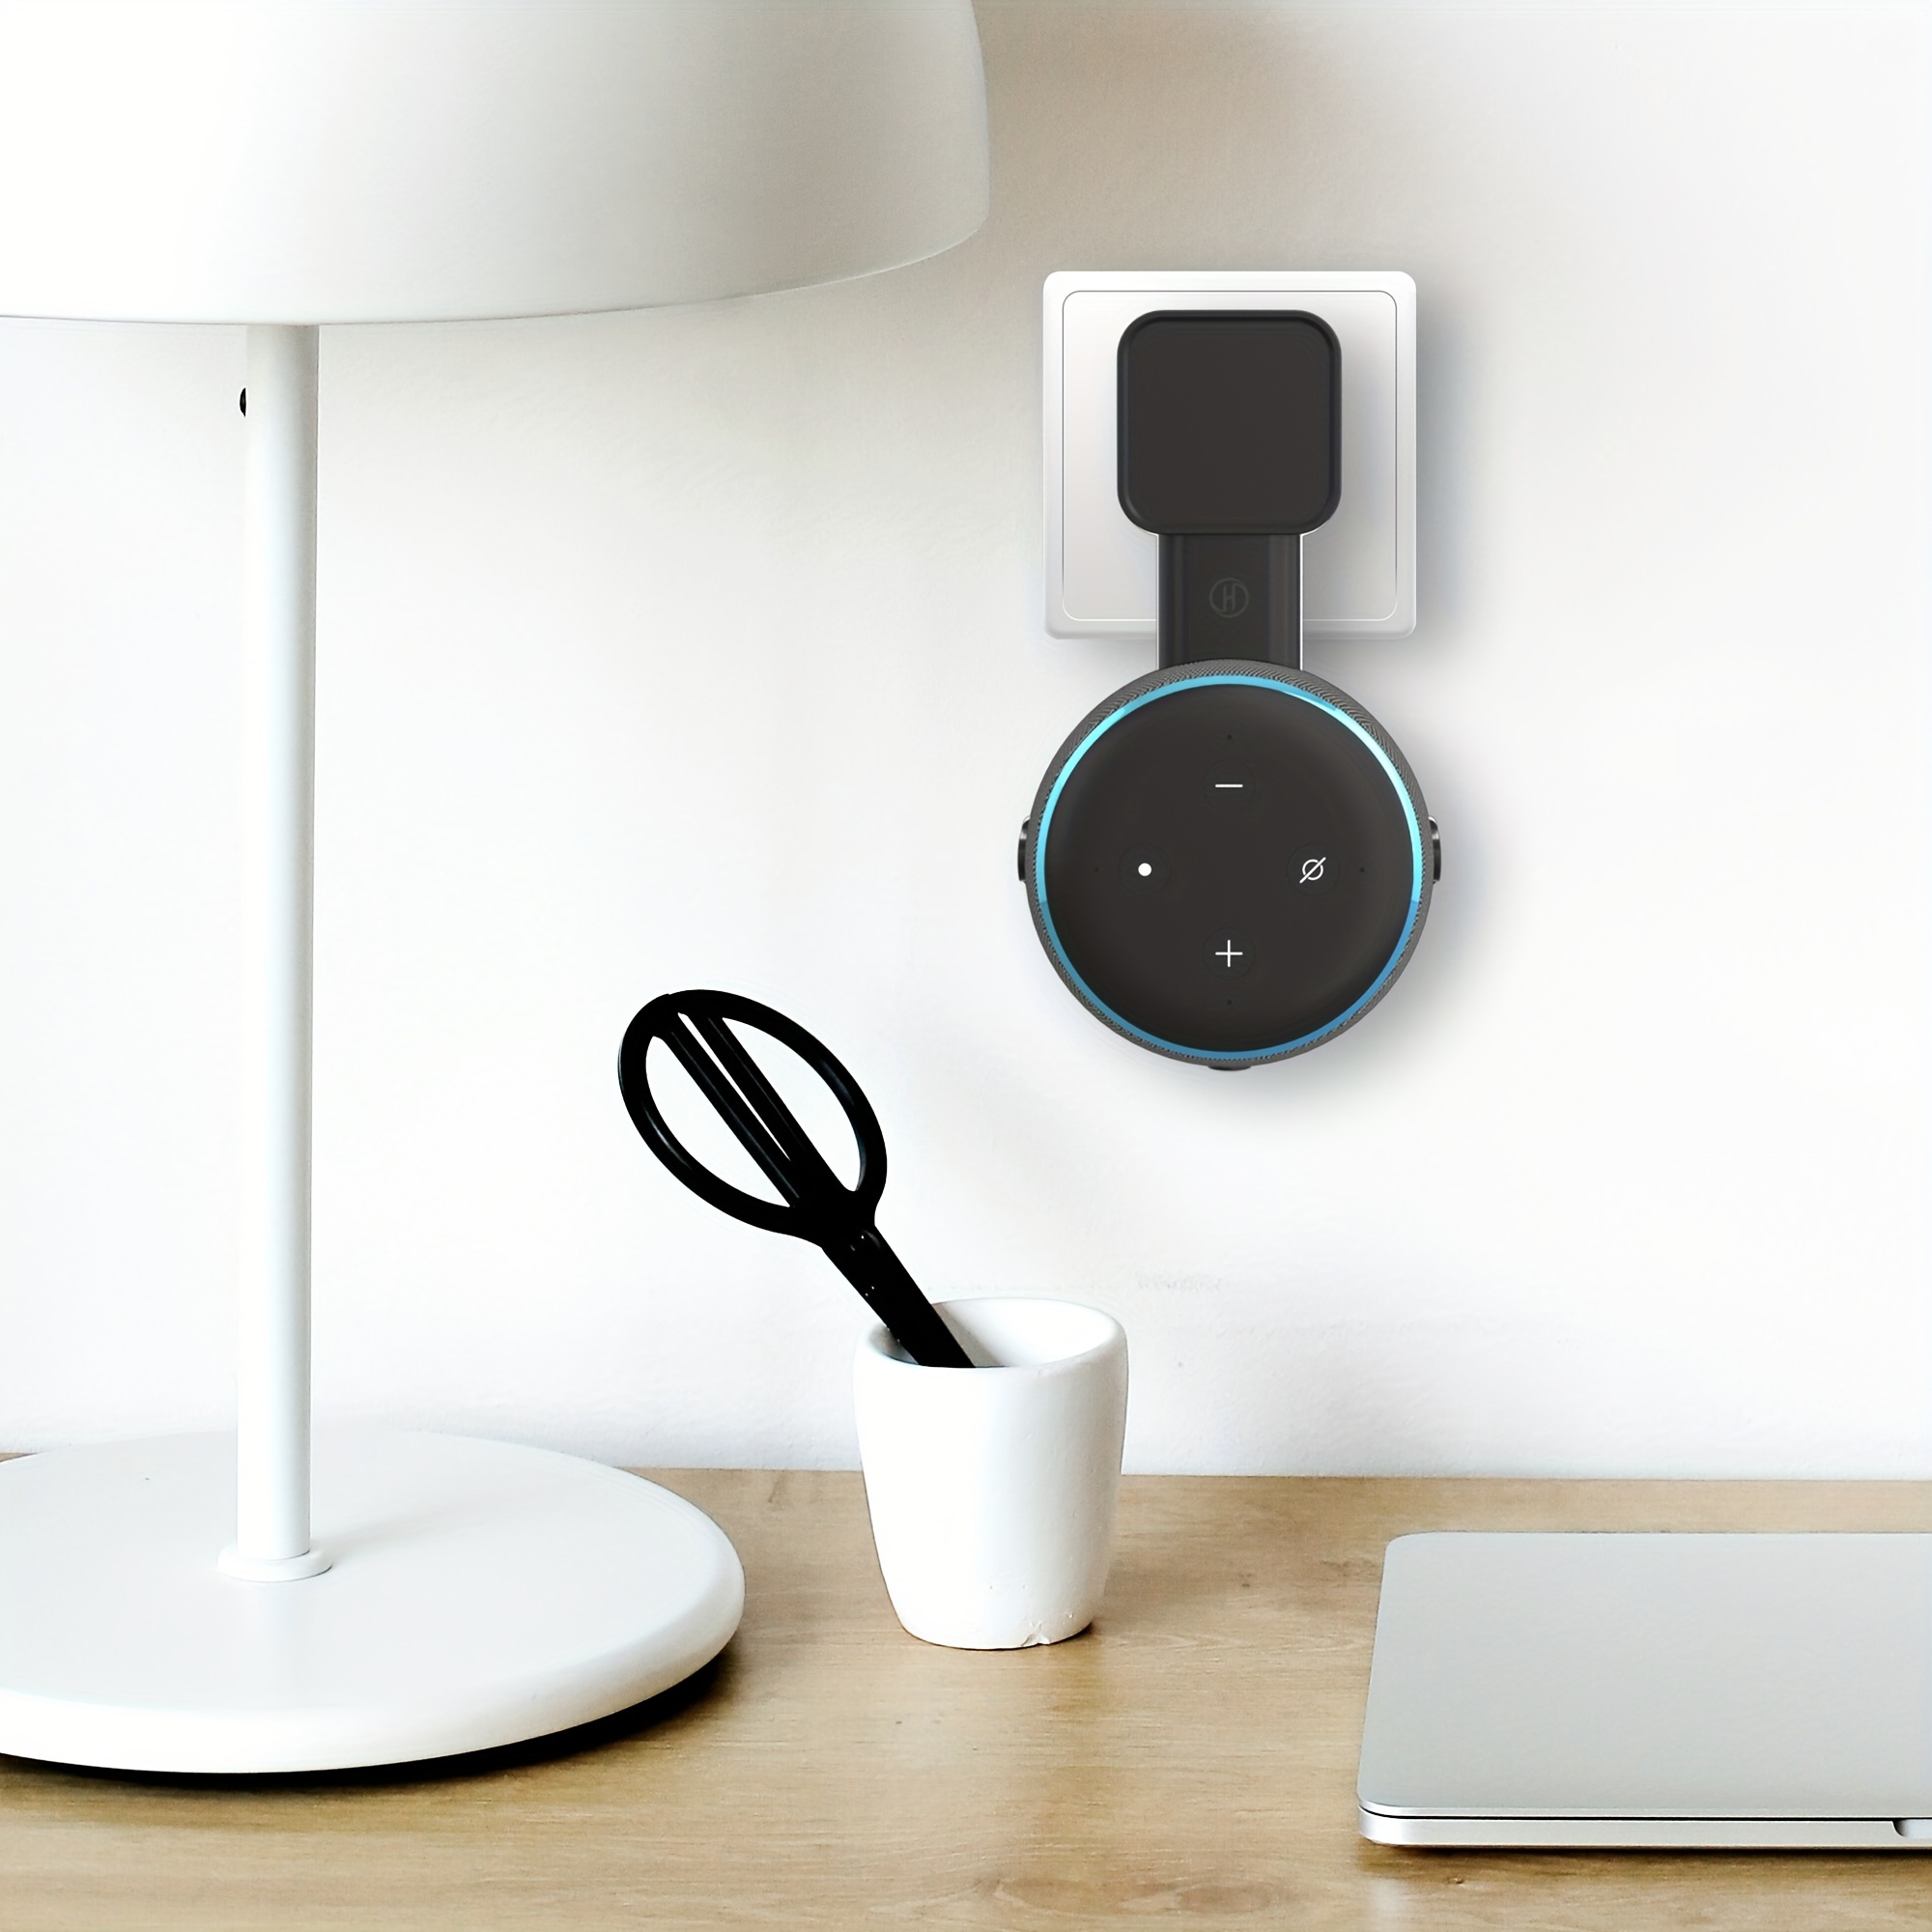 Haut-parleur Wall Mount Stand Hanger pour  Alexa Echo Dot 3rd  Generation Indoor Sound Box Case Holder pour Echo Dot 3 avec vis